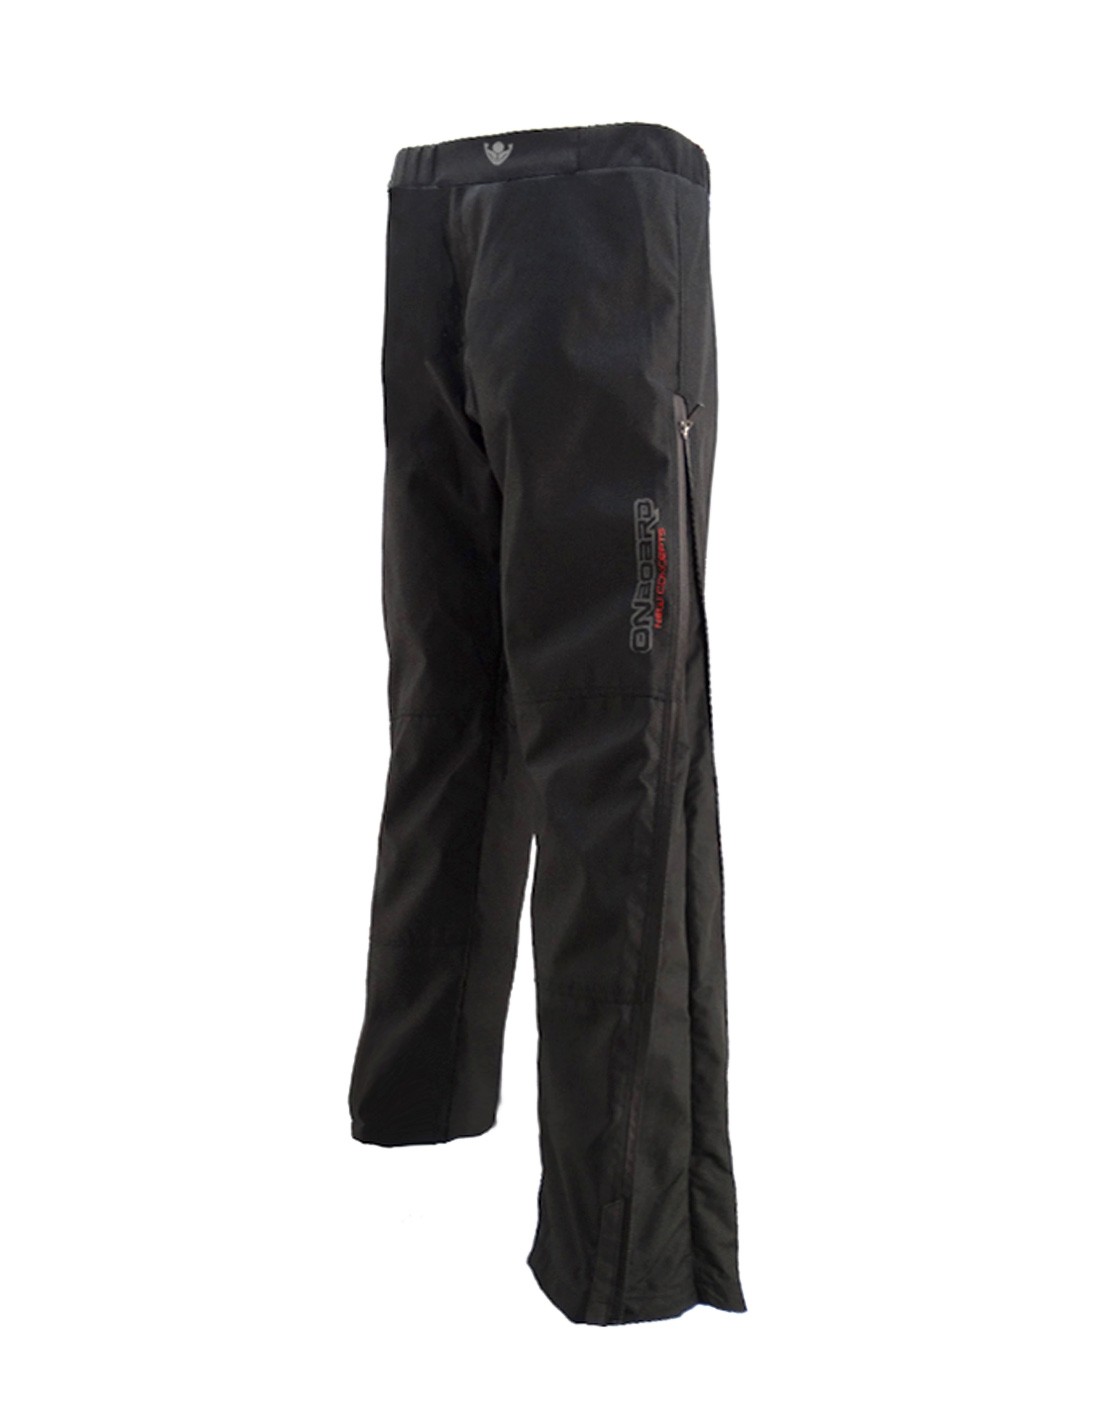 Pantalon Moto Mac 4 Estaciones Abrigo Termico Protecciones